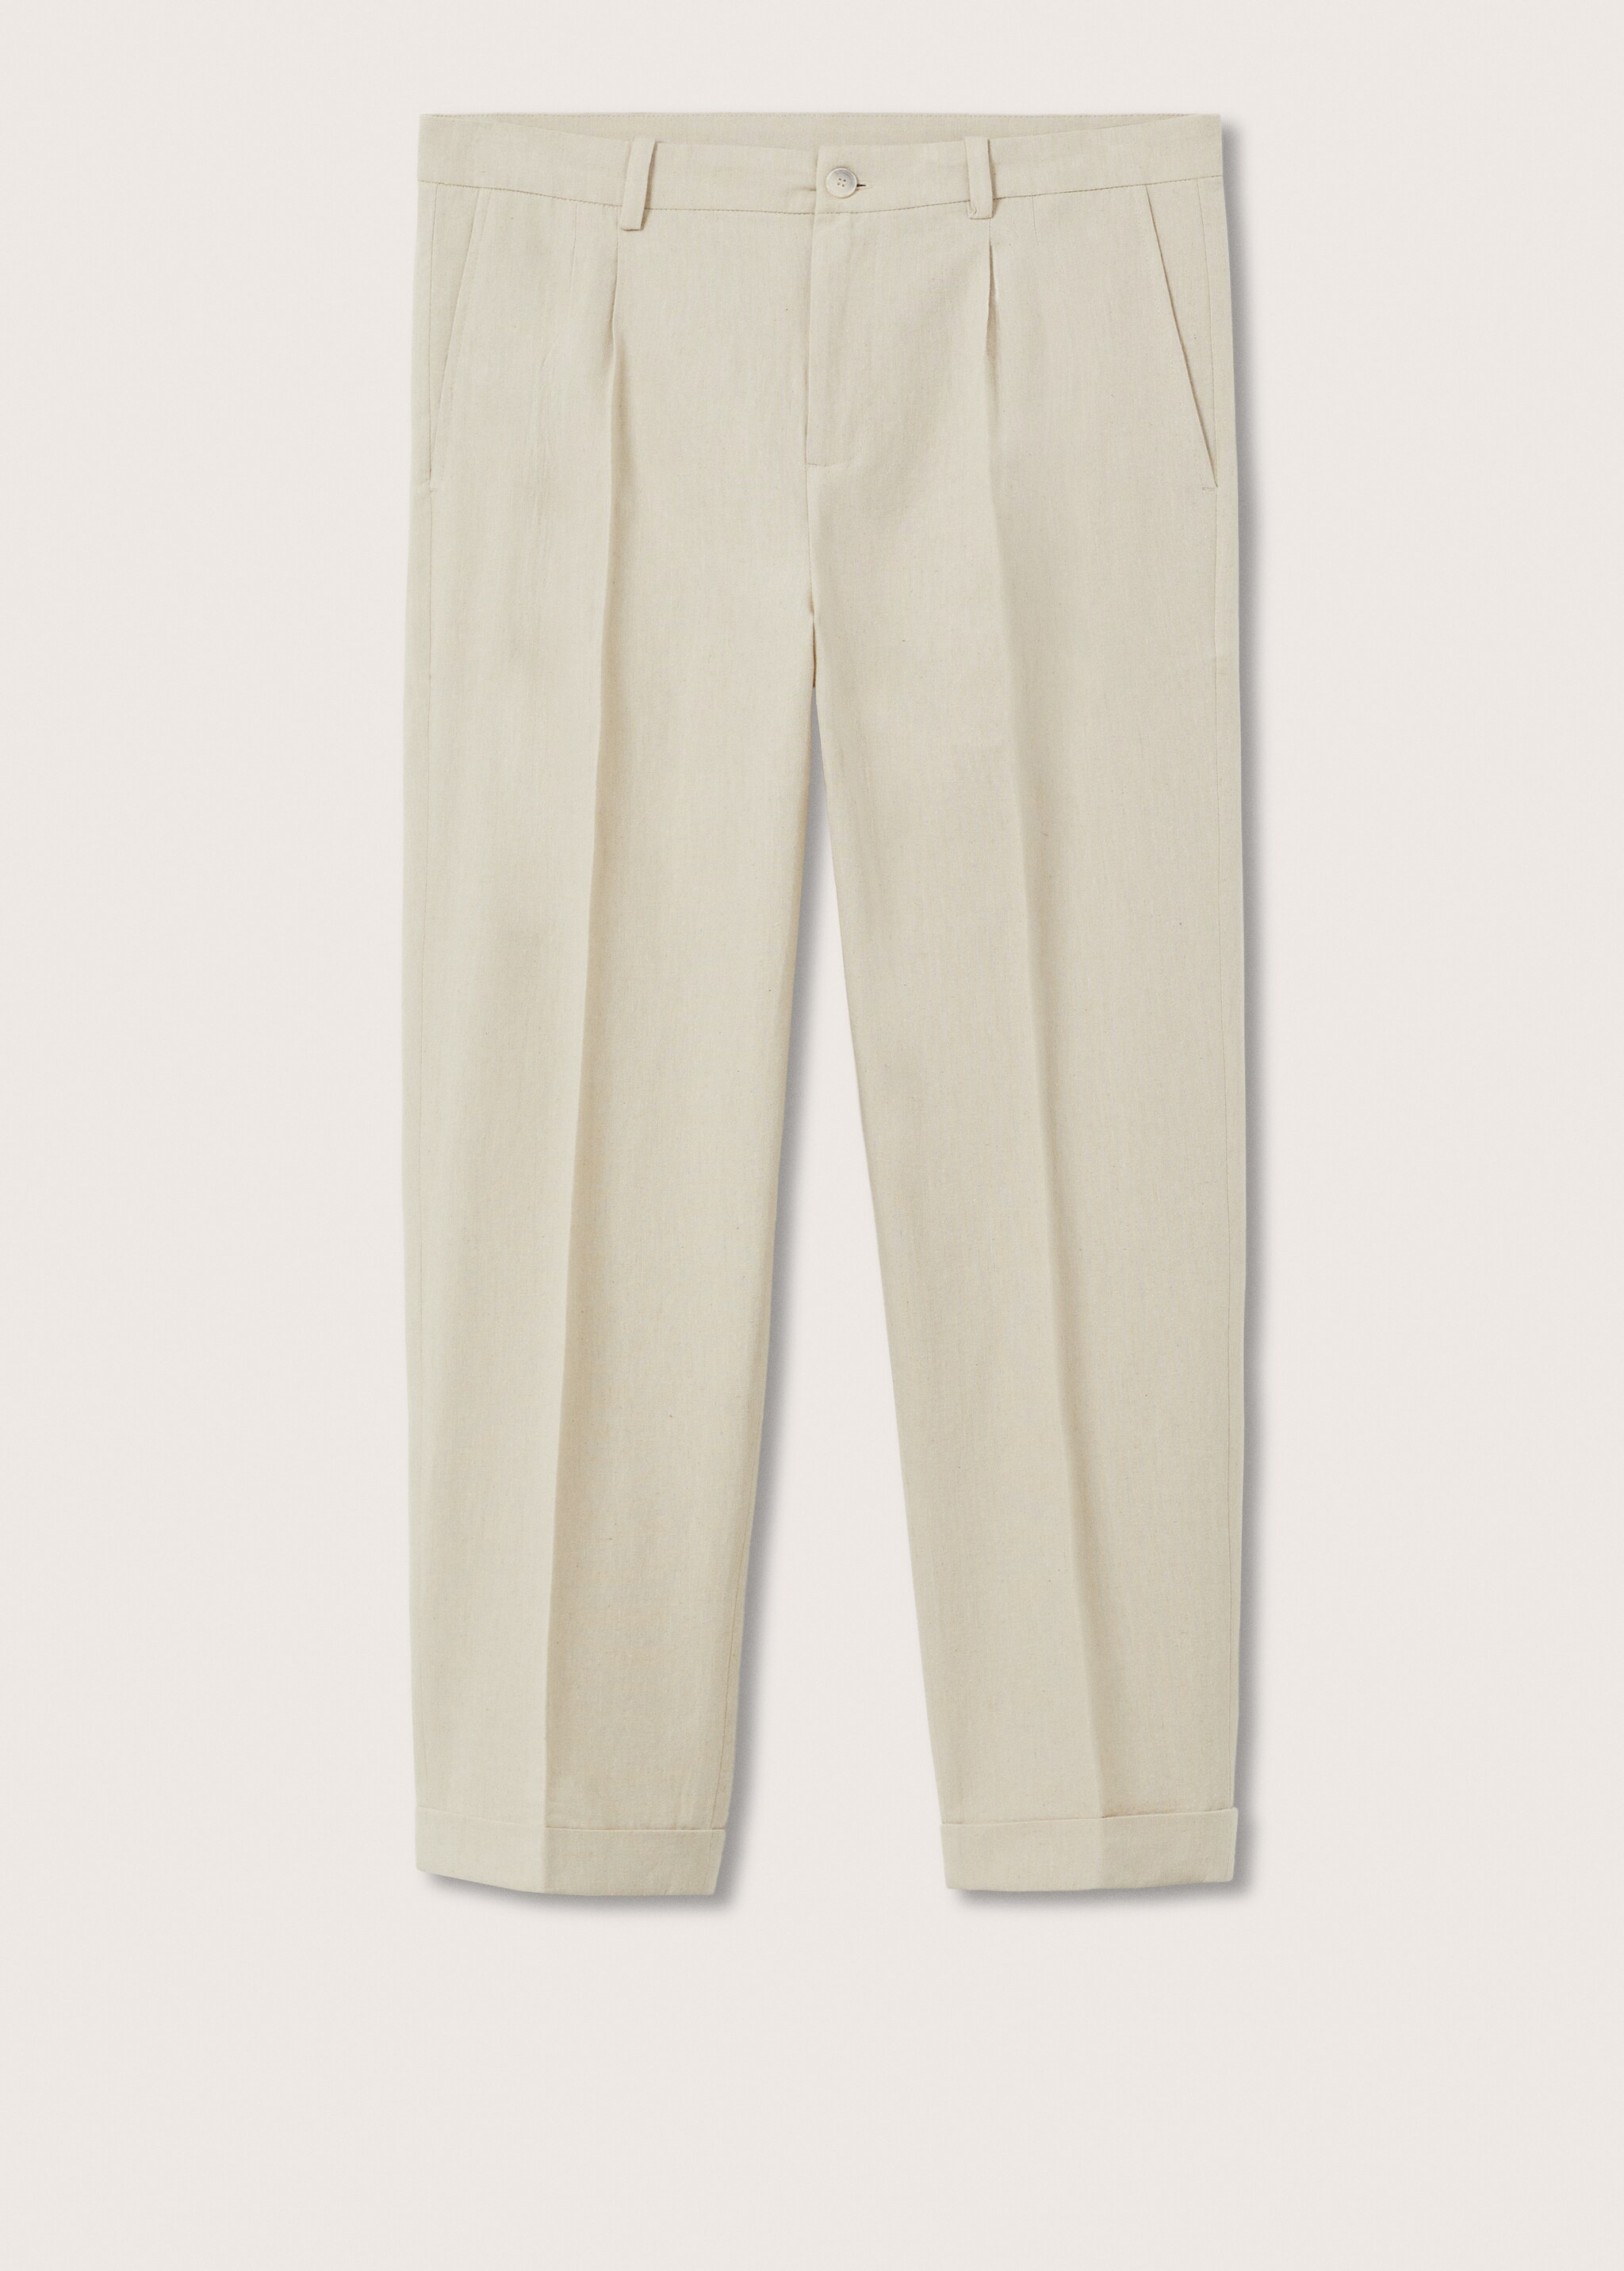 Pantalón lino algodón - Artículo sin modelo